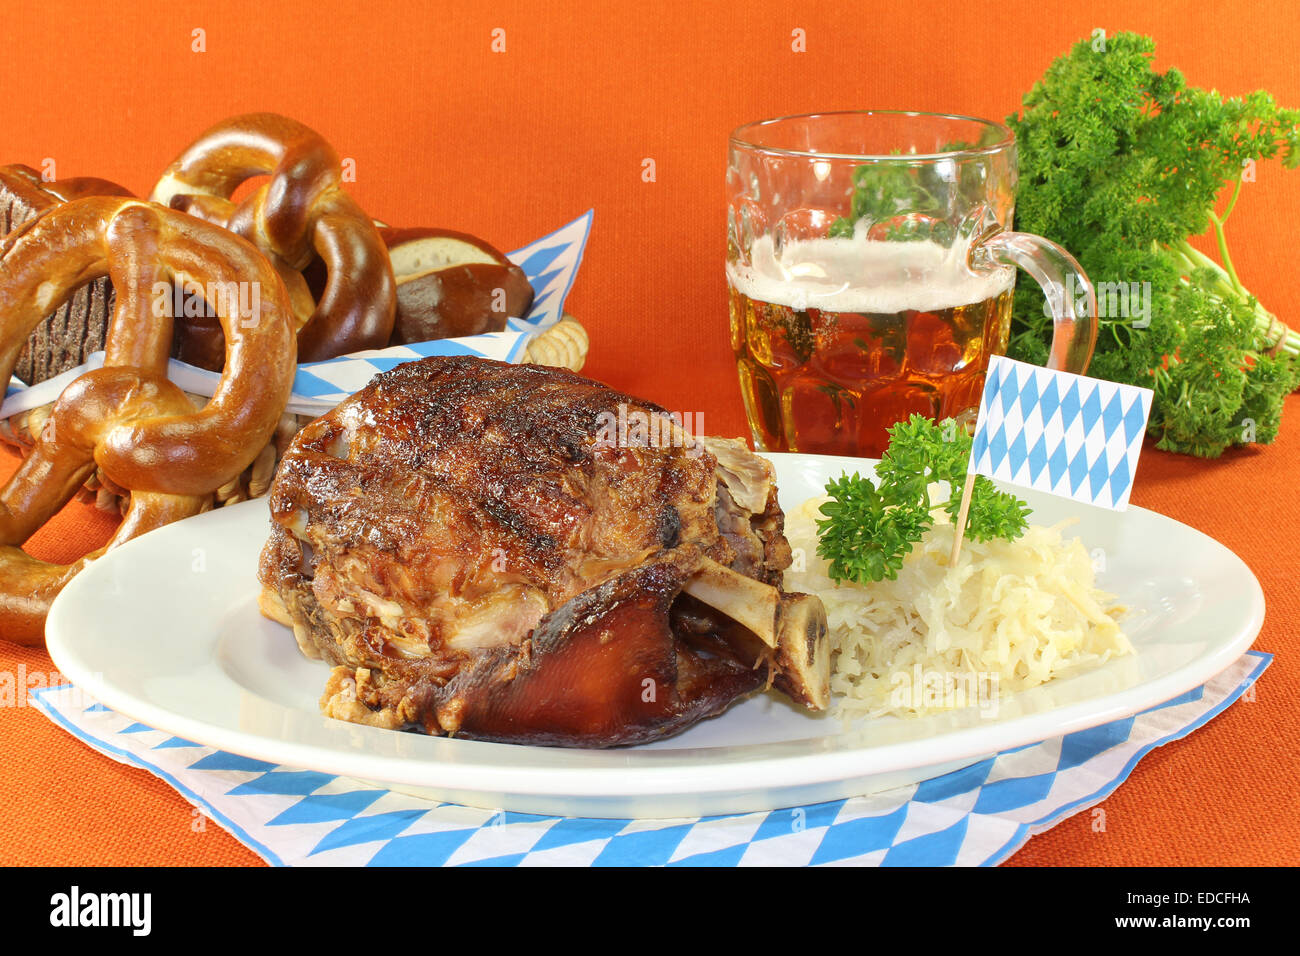 Pork knuckle with sauerkraut and pretzels Stock Photo